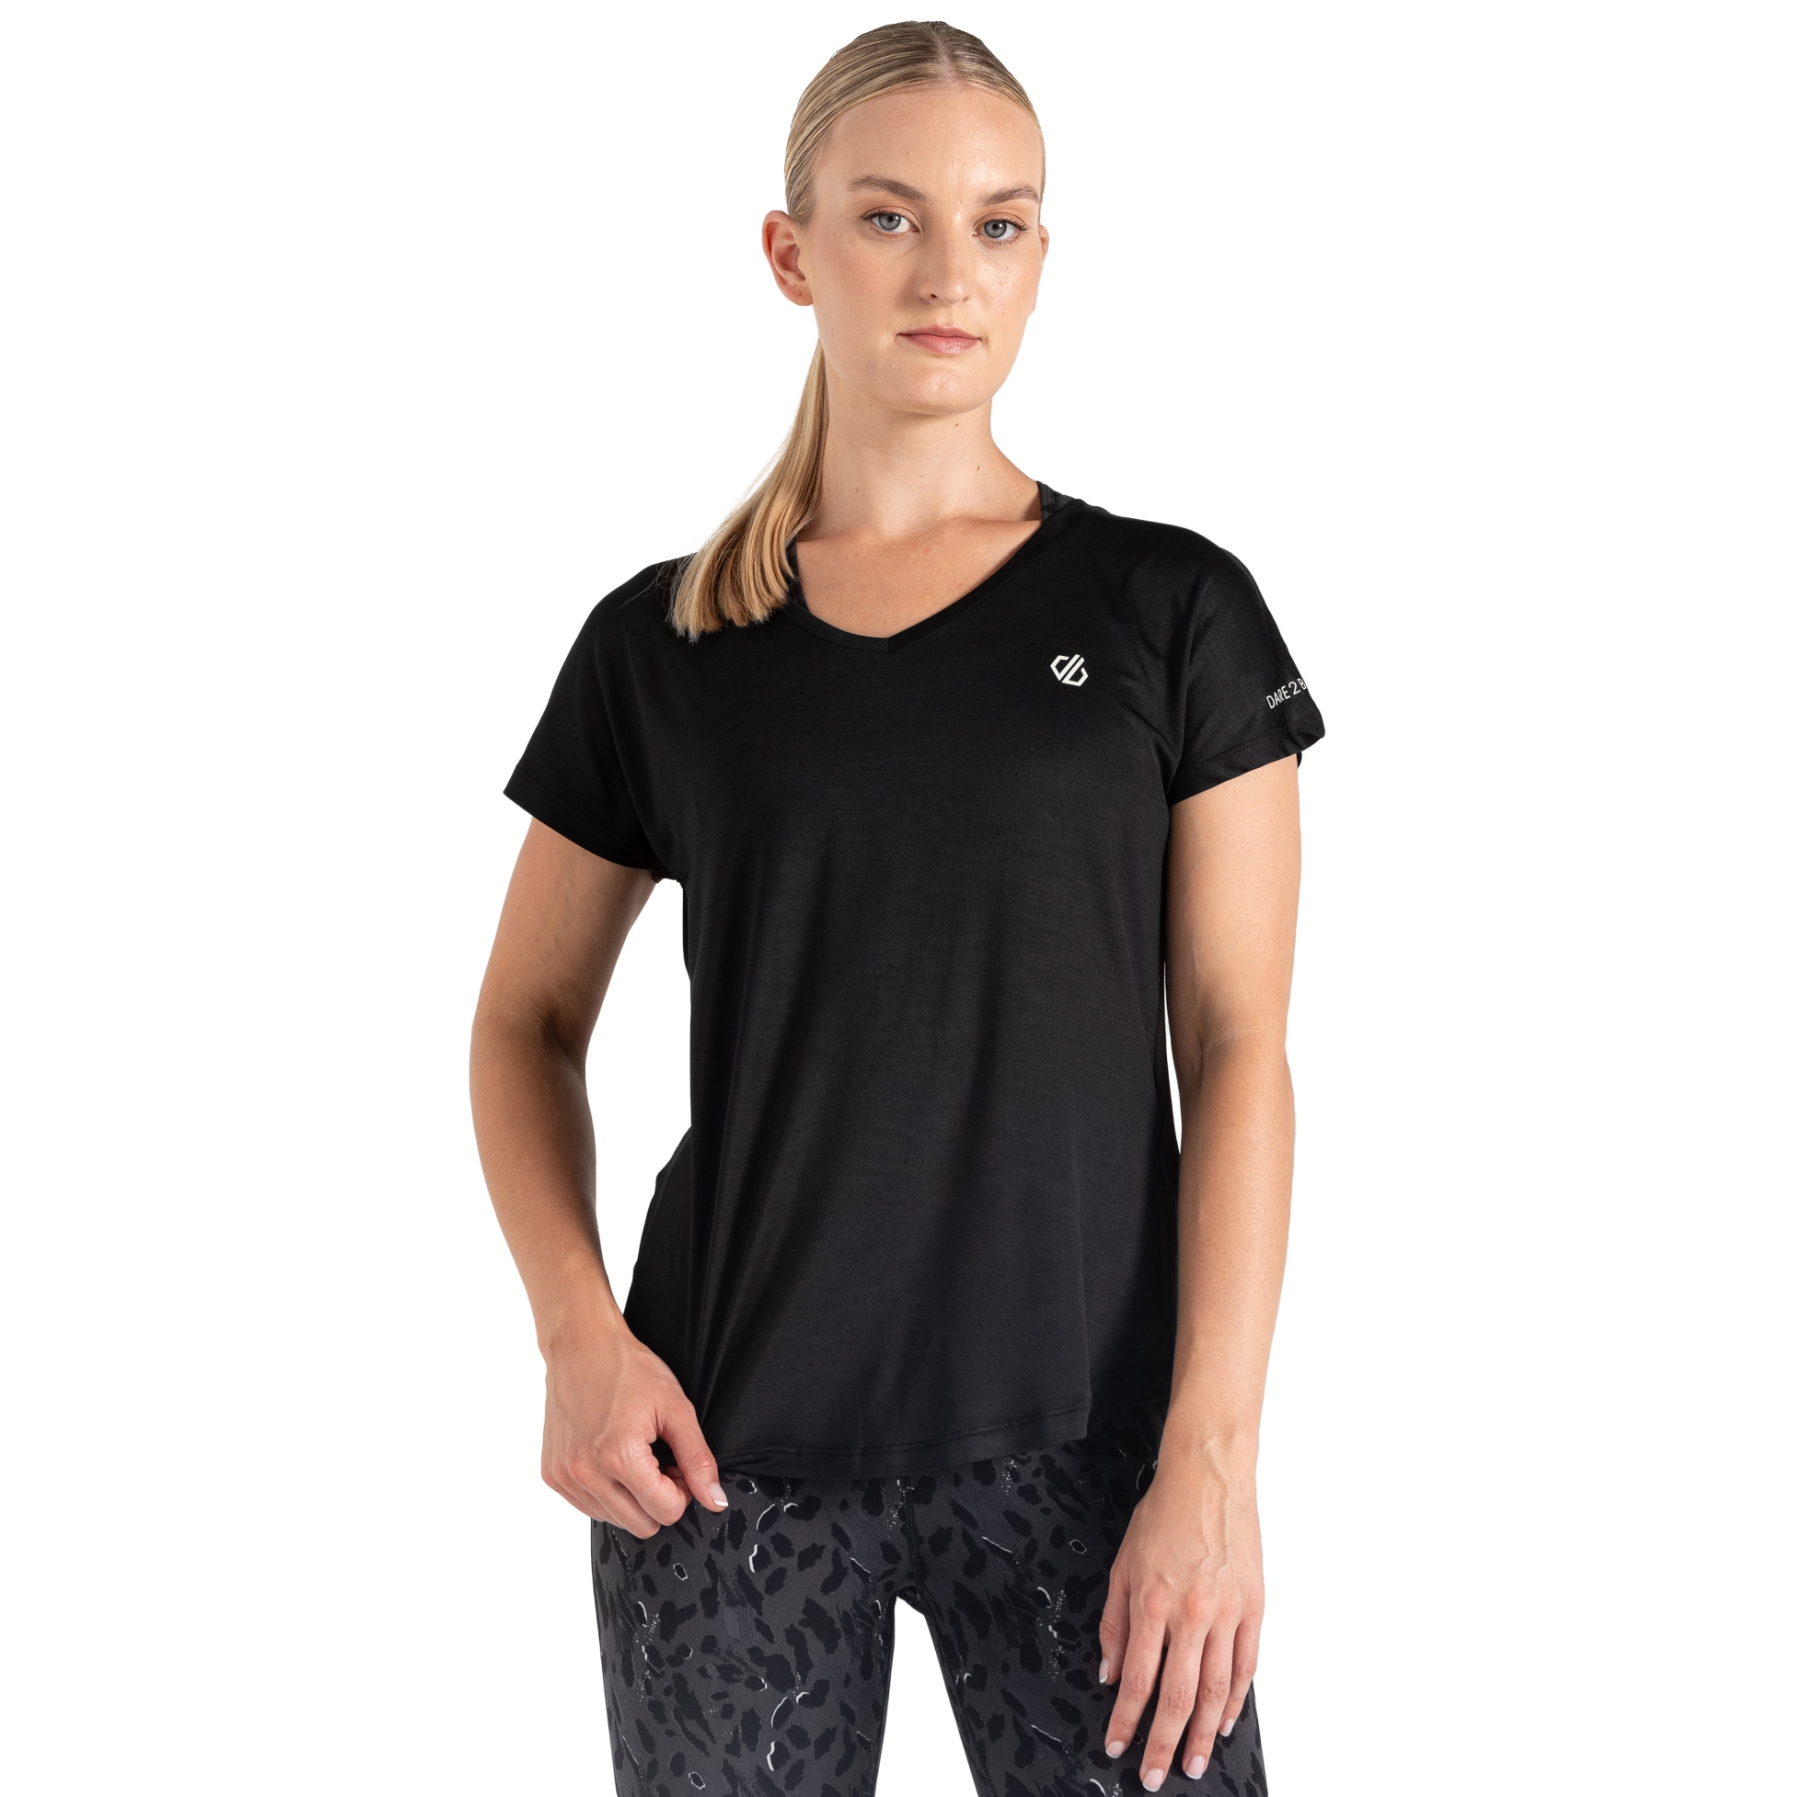 Produktbild von Dare 2b Vigilant T-Shirt Damen - 800 Schwarz